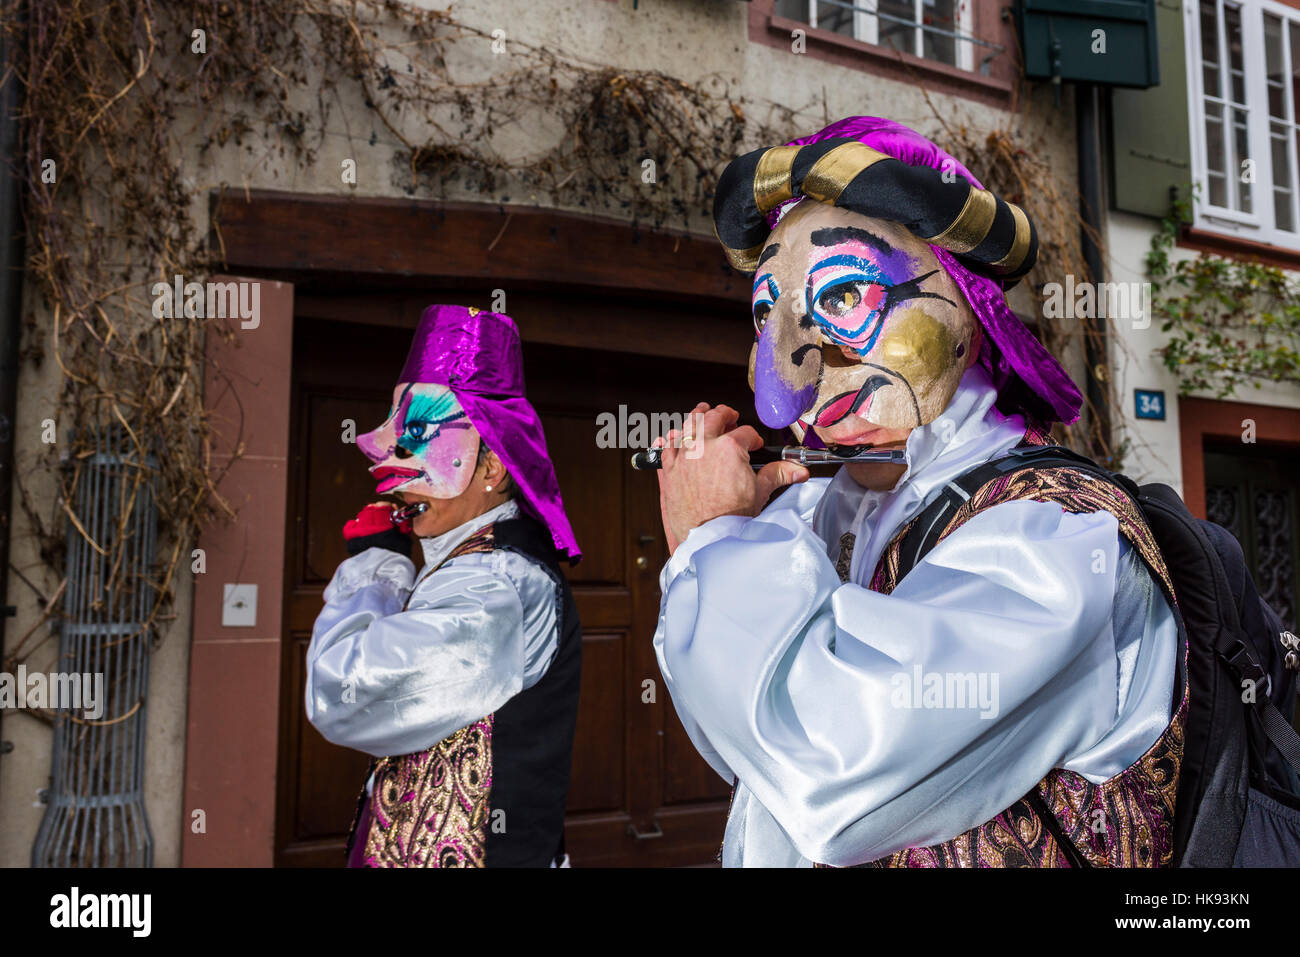 De nombreux groupes de gens masqués à pied à travers les rues de Bâle pour 3 jours et nuits de basler fasnacht, jouer de la musique tout le temps Banque D'Images